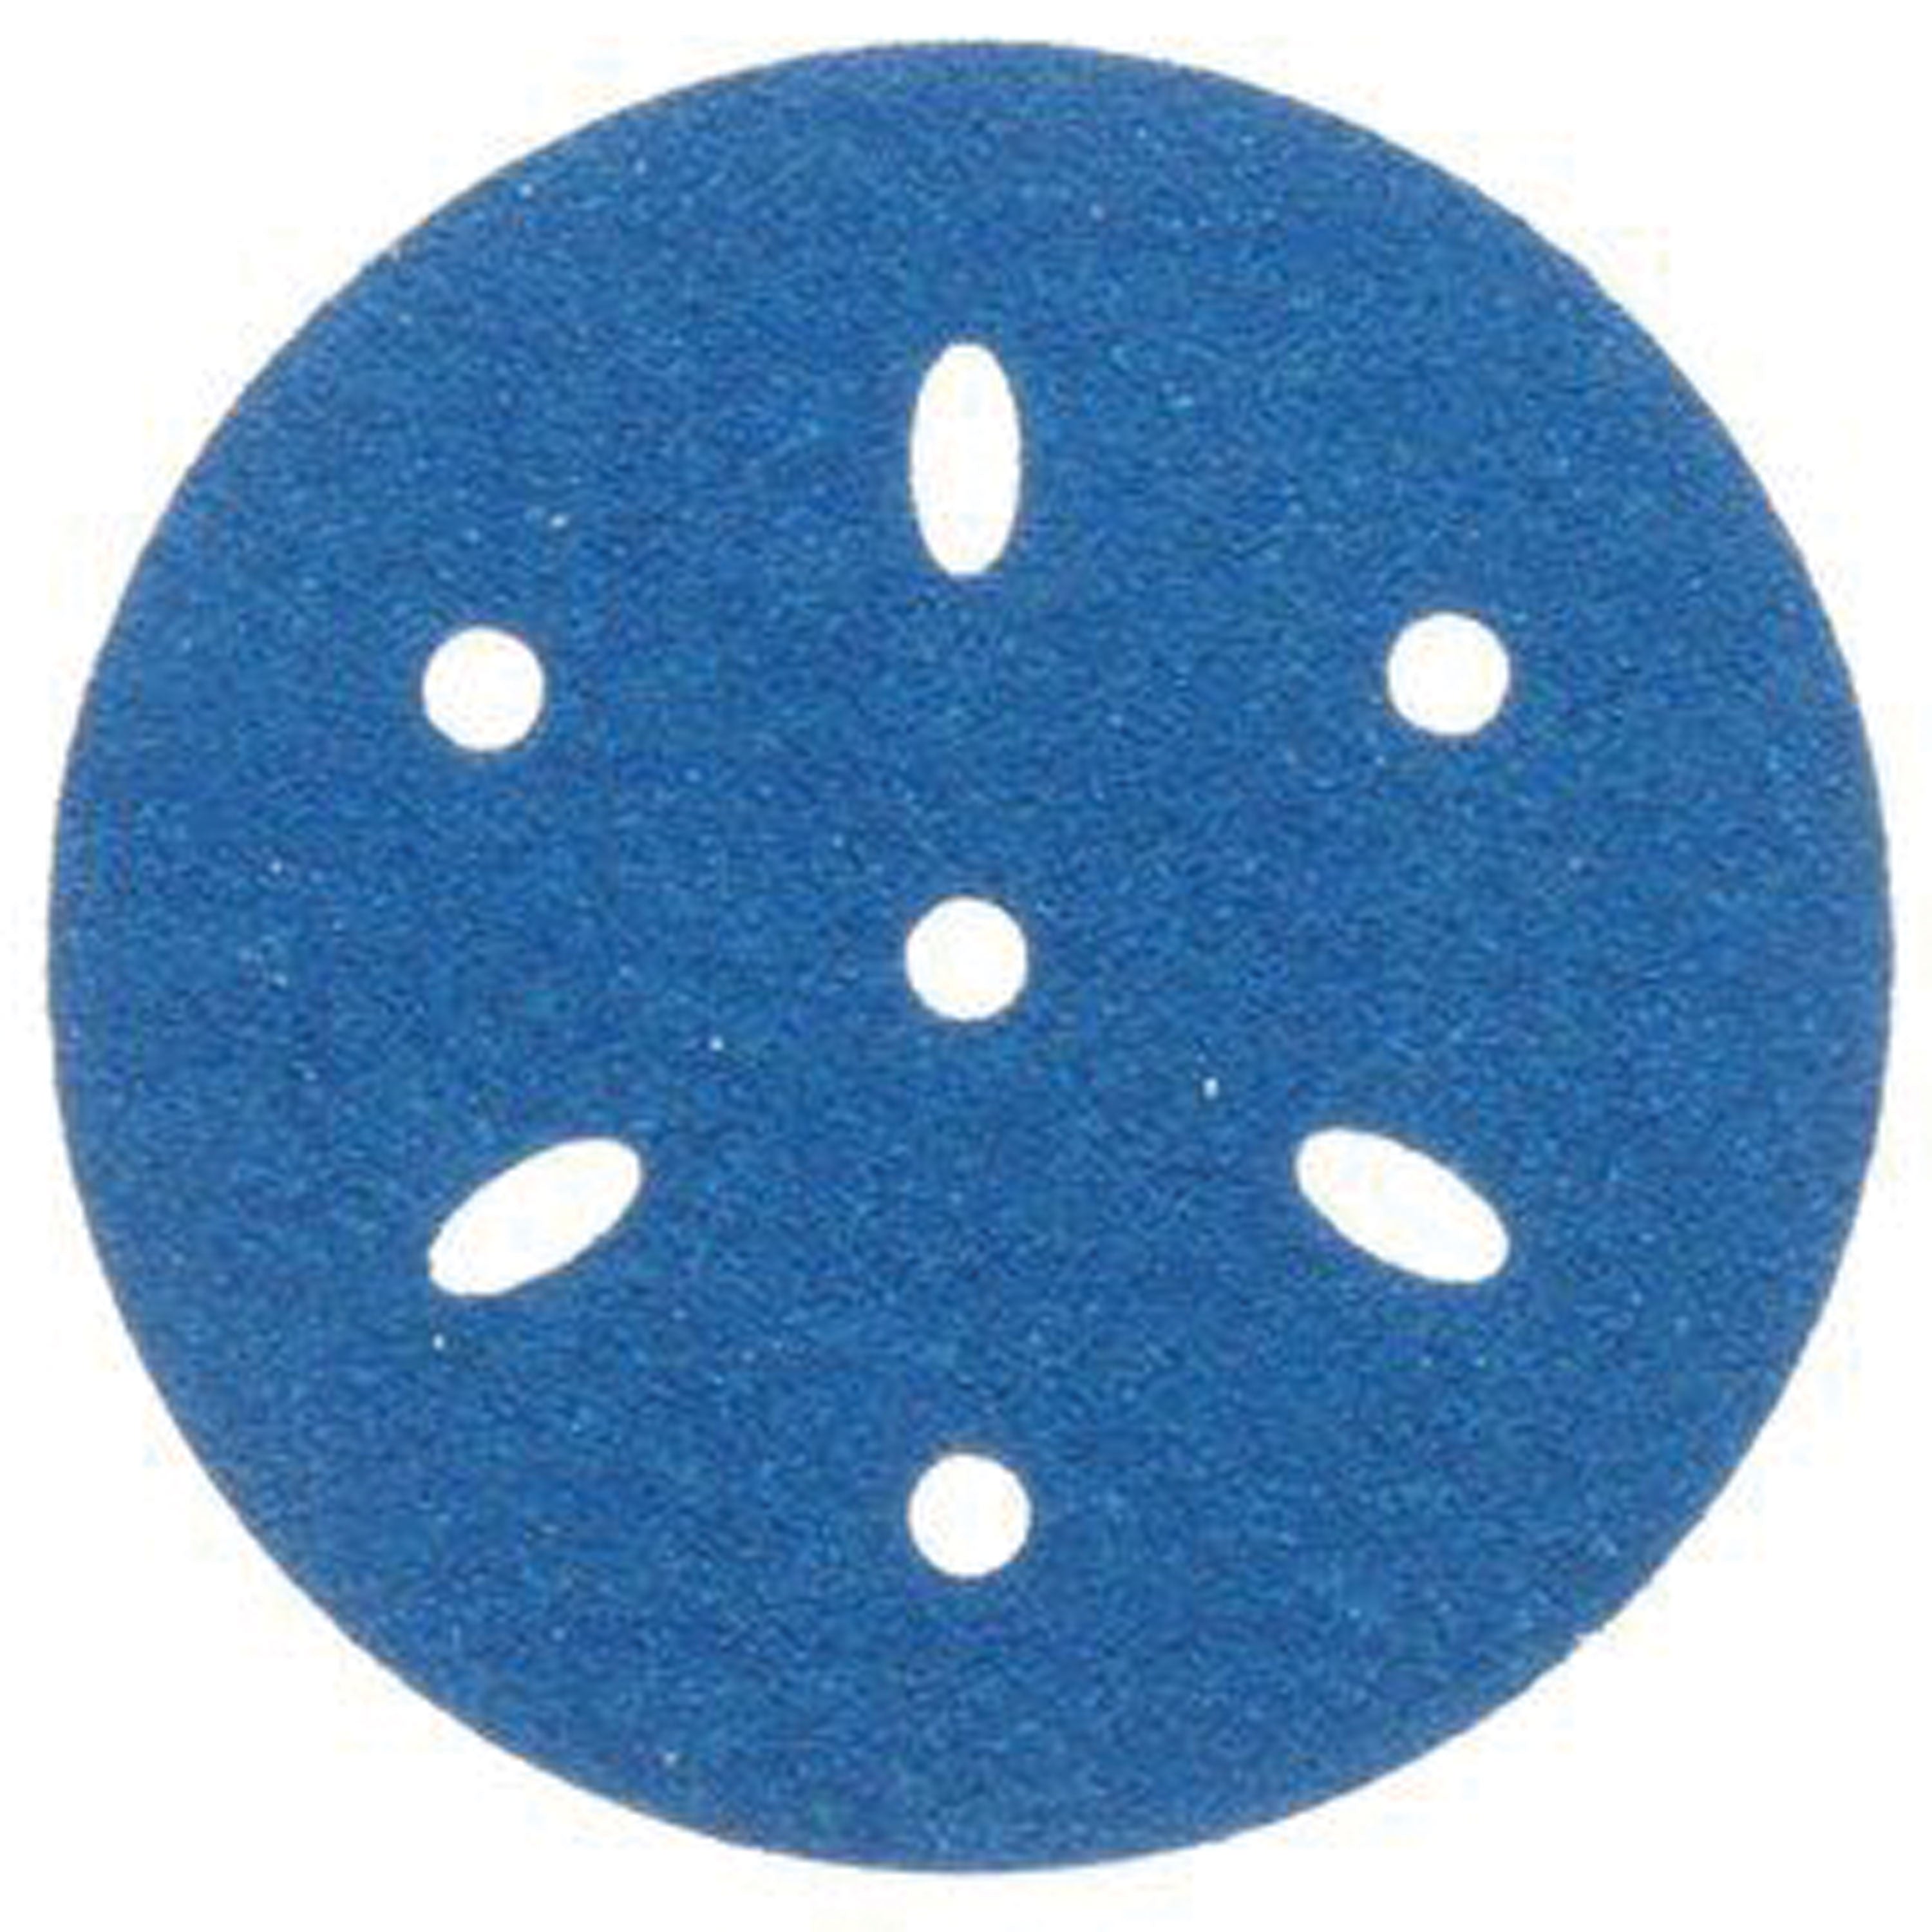 3M 36172 Hookit Blue Sandpaper 6" Disc - 80 Grade Multi-Hole, 50/Box